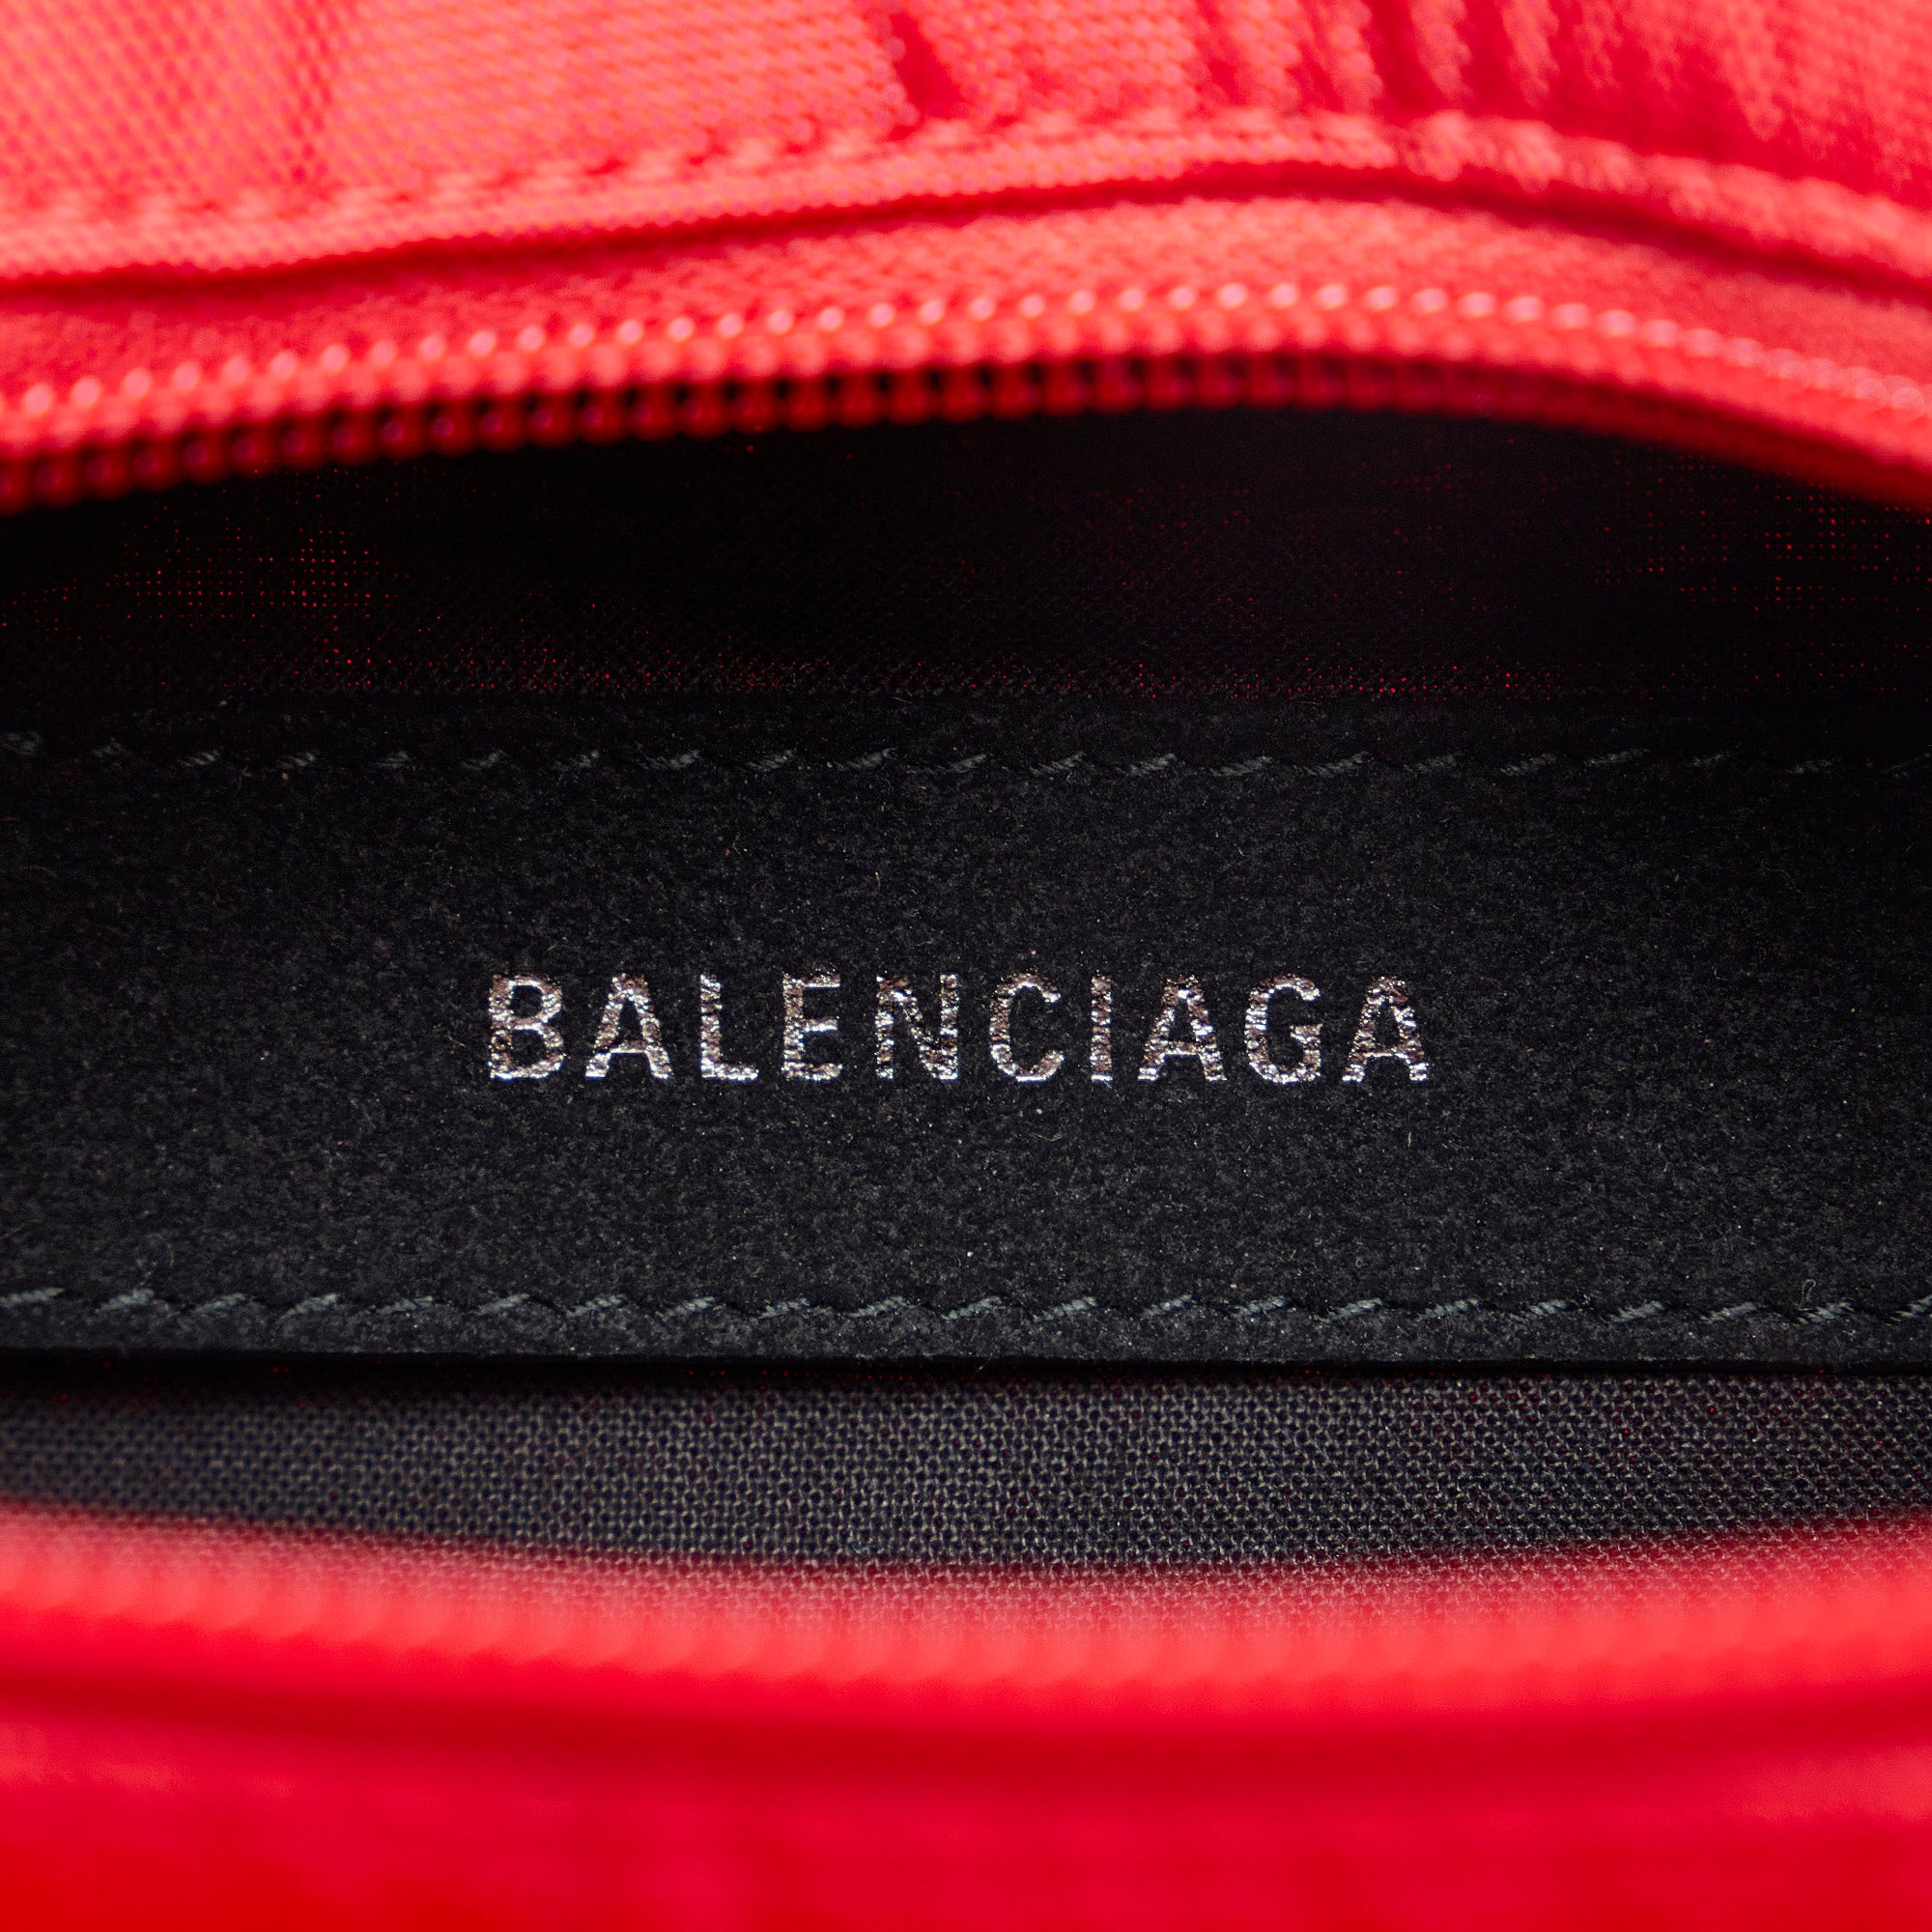 Balenciaga Expandable Shopping Bag - Red